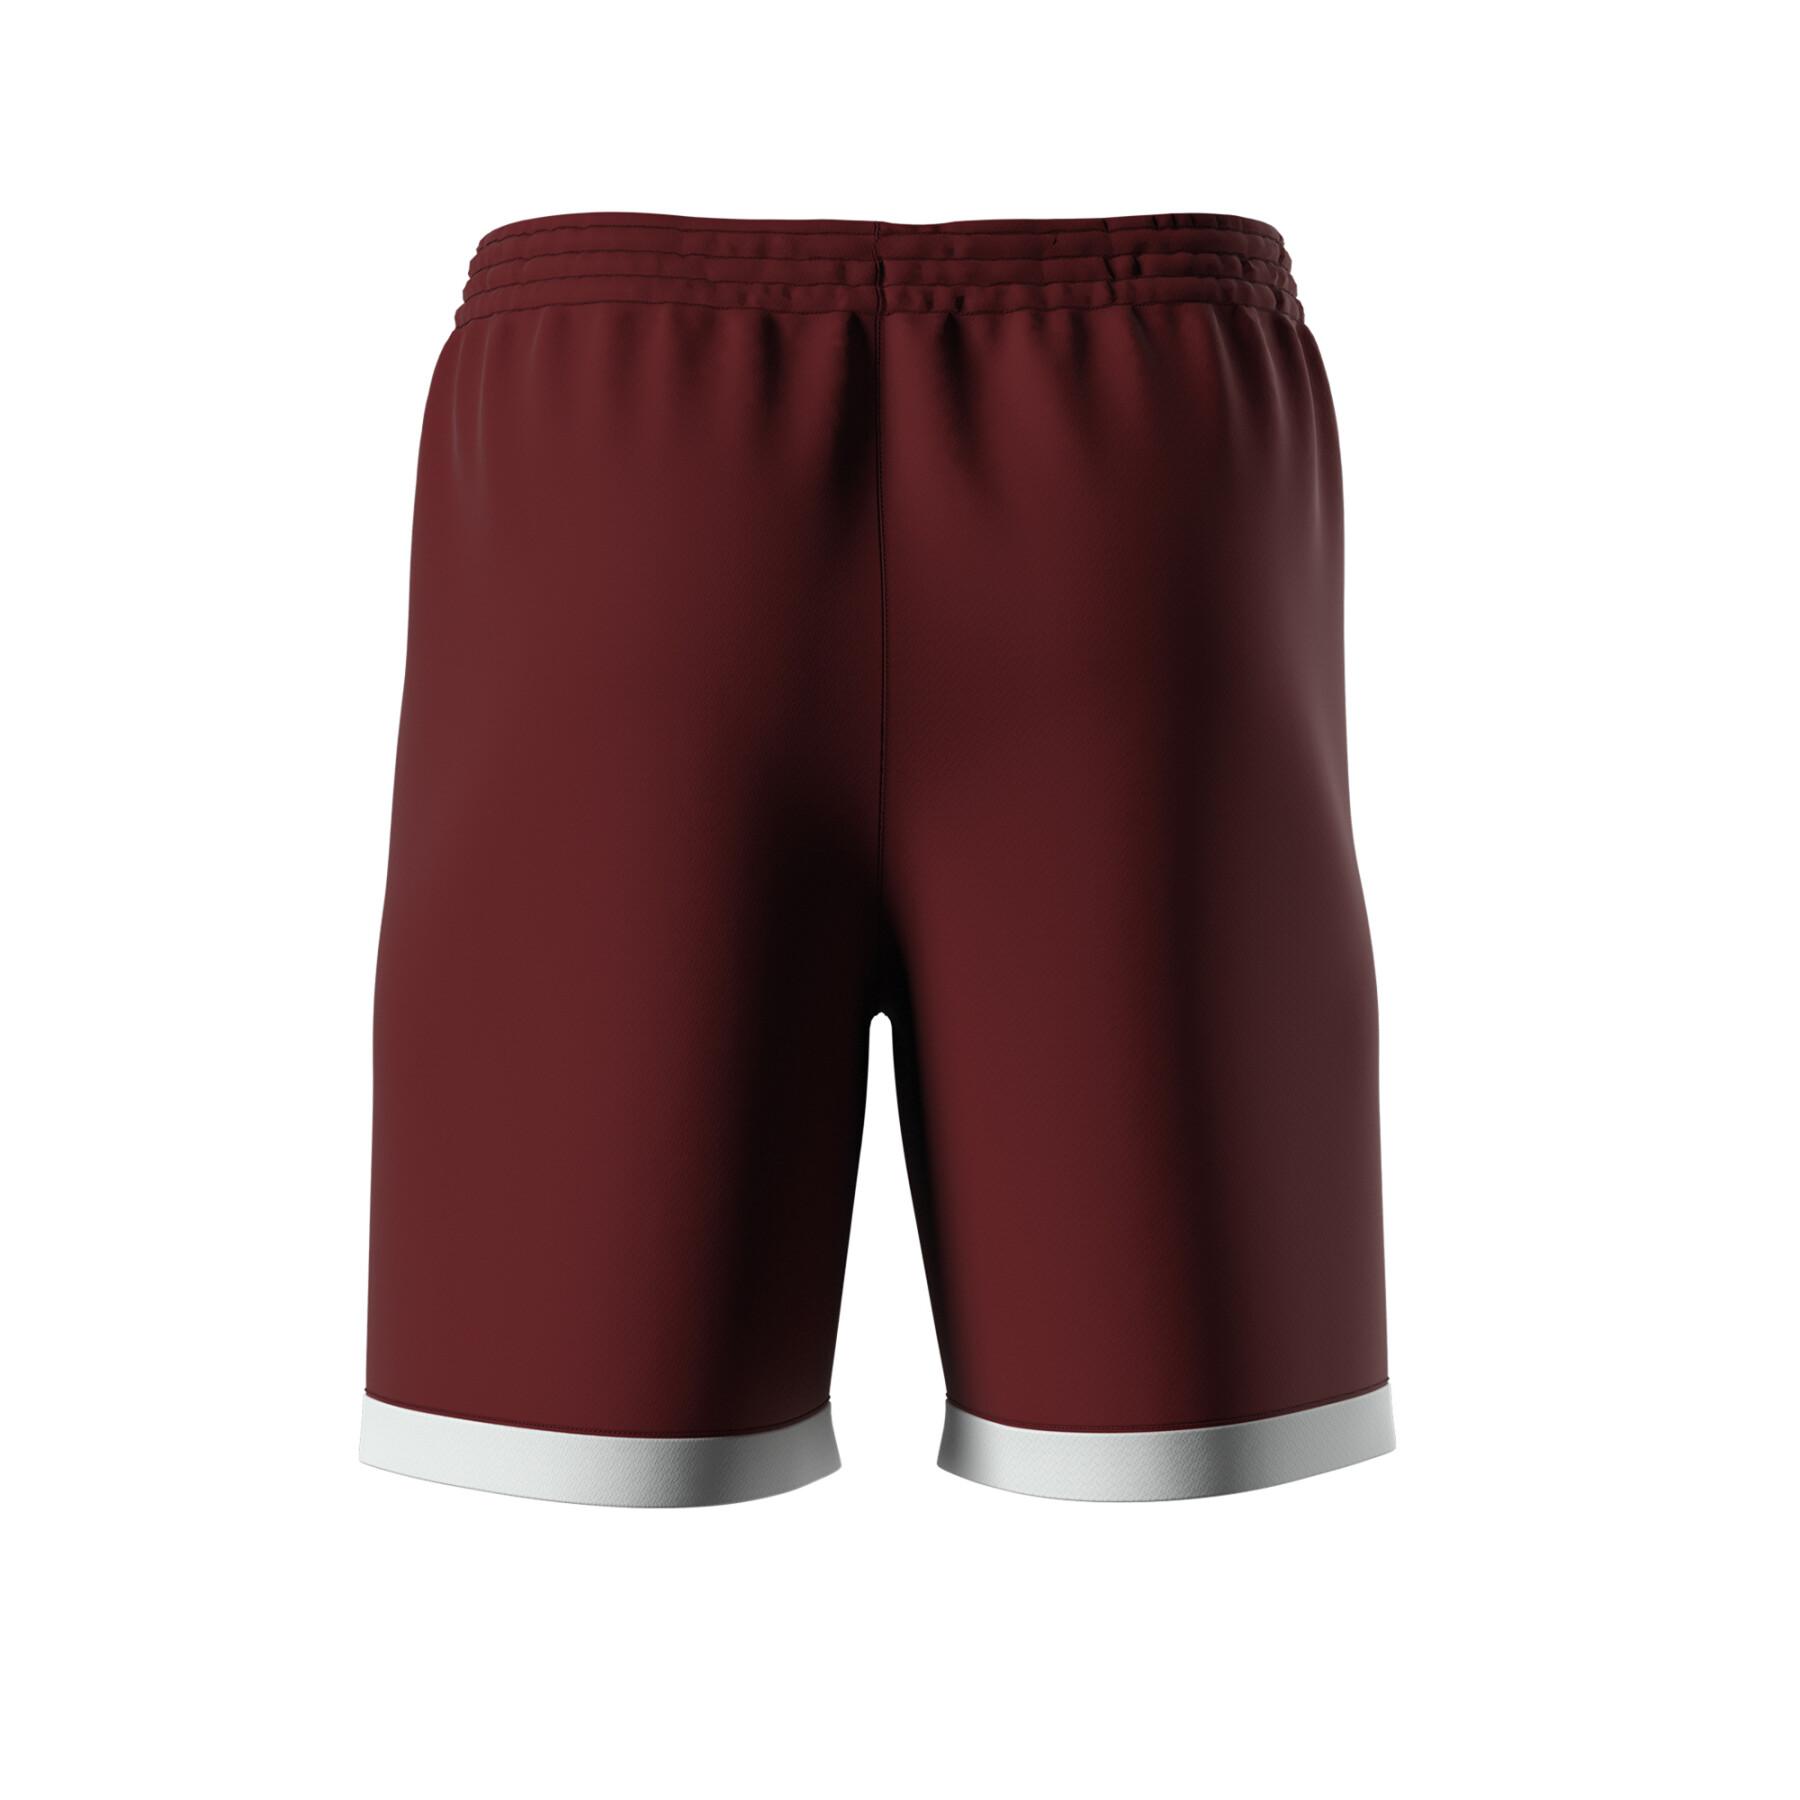 Short Errea Barney - Shorts - Textile - Handball wear